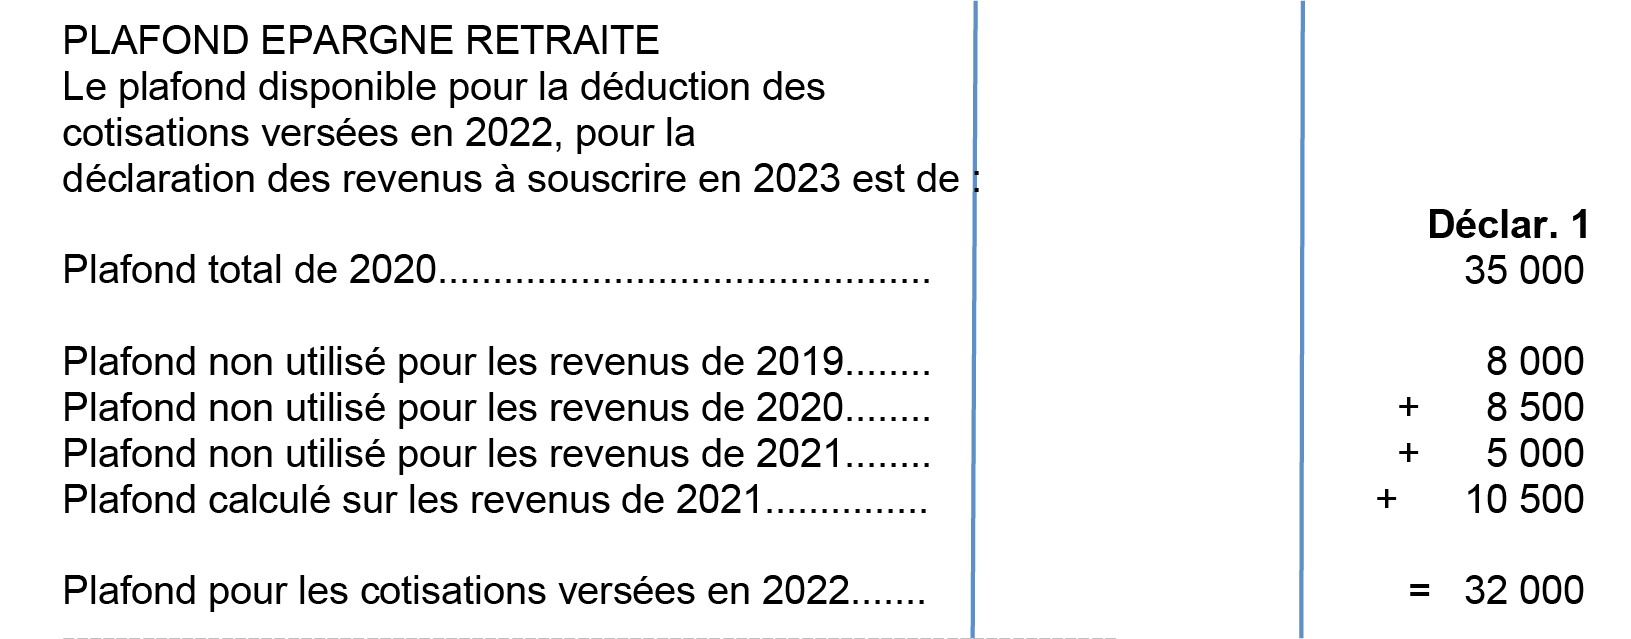 Avis d'imposition 2022 sur les revenus 2021 exemple